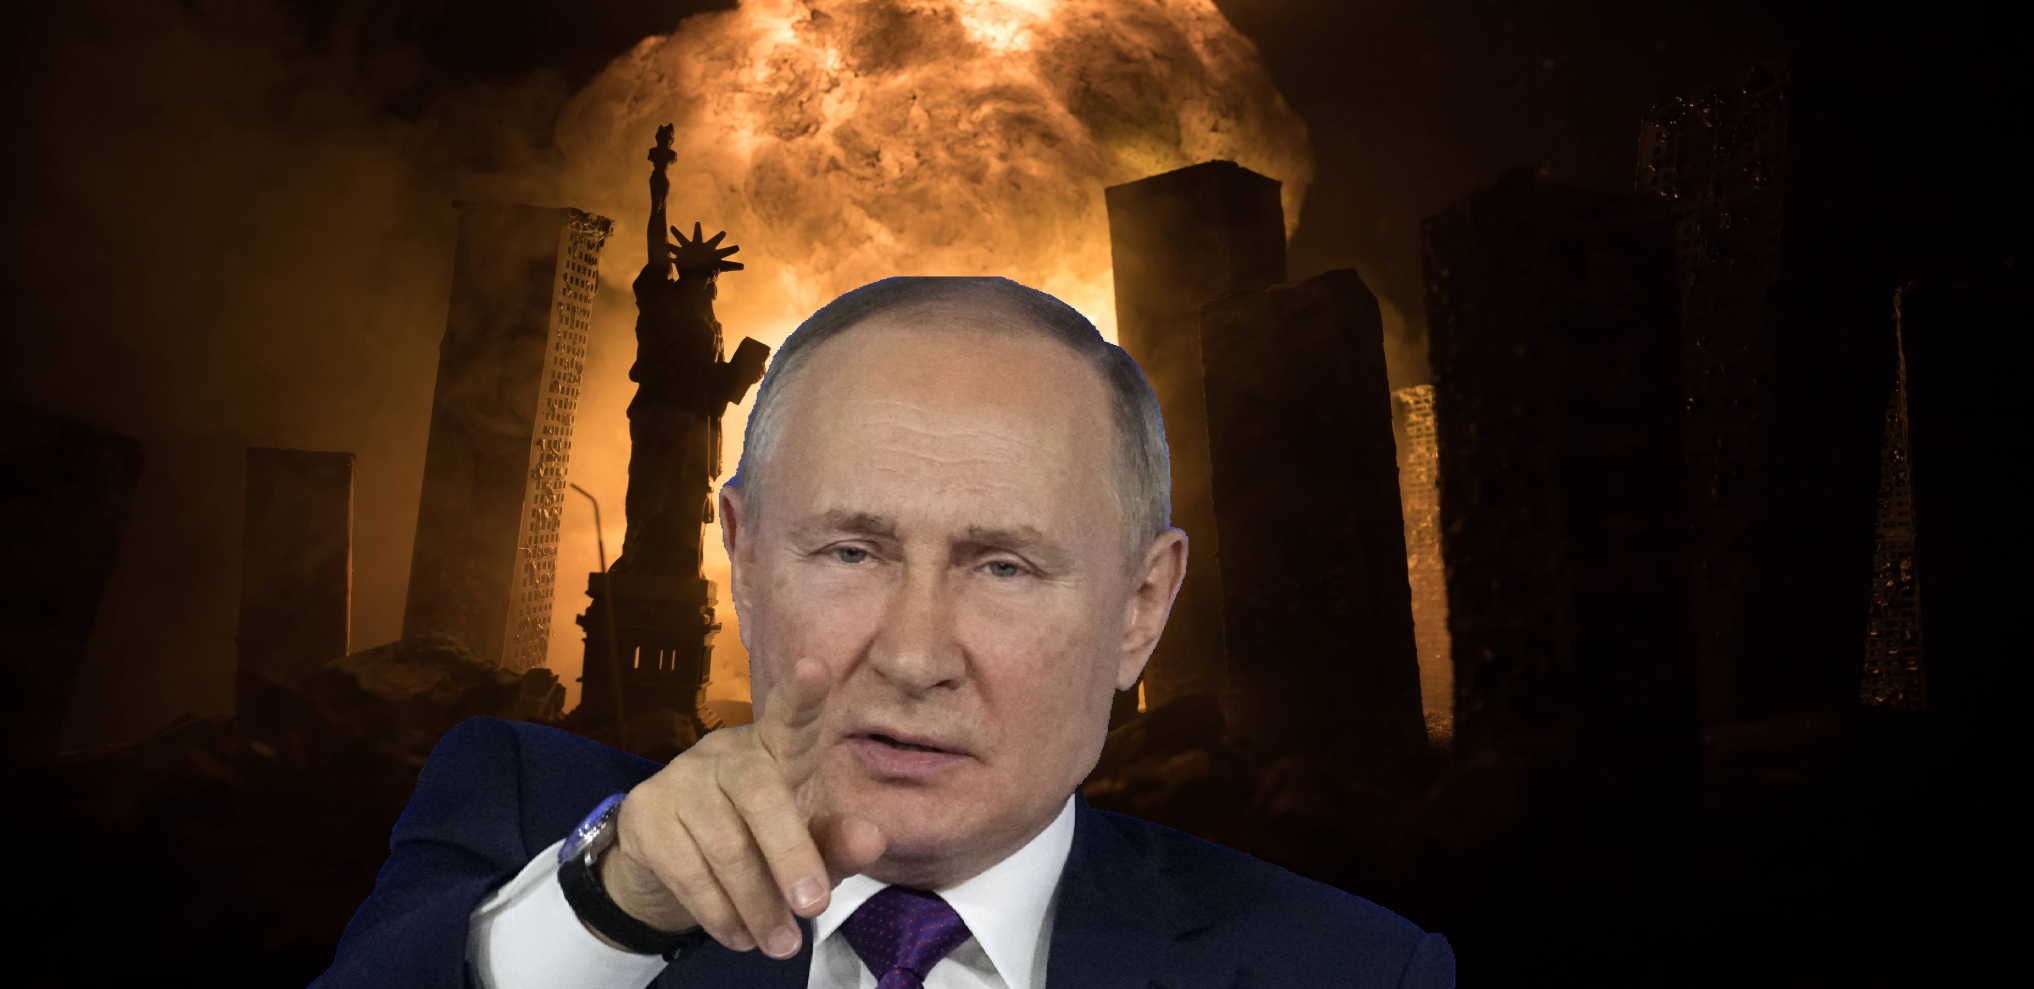 BIVŠI RUSKI MINISTAR ZNA ODGOVOR! Šta je pravi razlog zbog kojeg je Putin napao Ukrajinu?